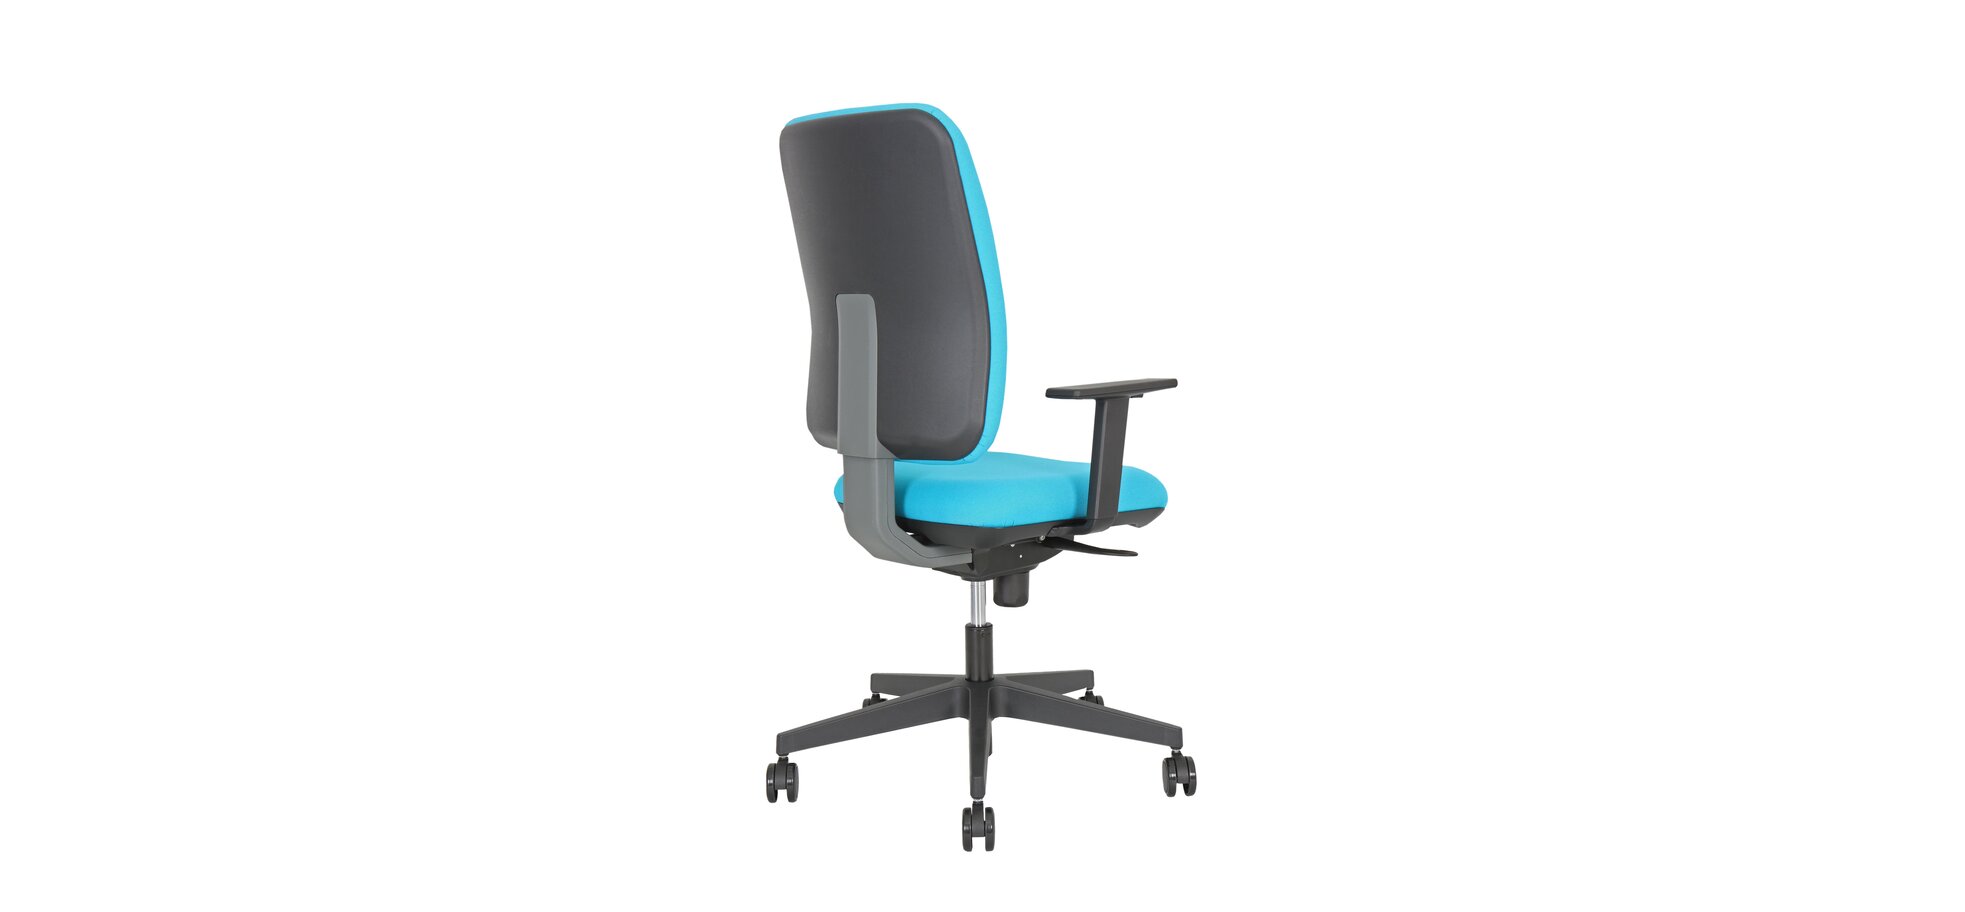 Bürodrehstuhl – höhenverstellbarer Sitz und Armlehnen, Stoff, Schwarz